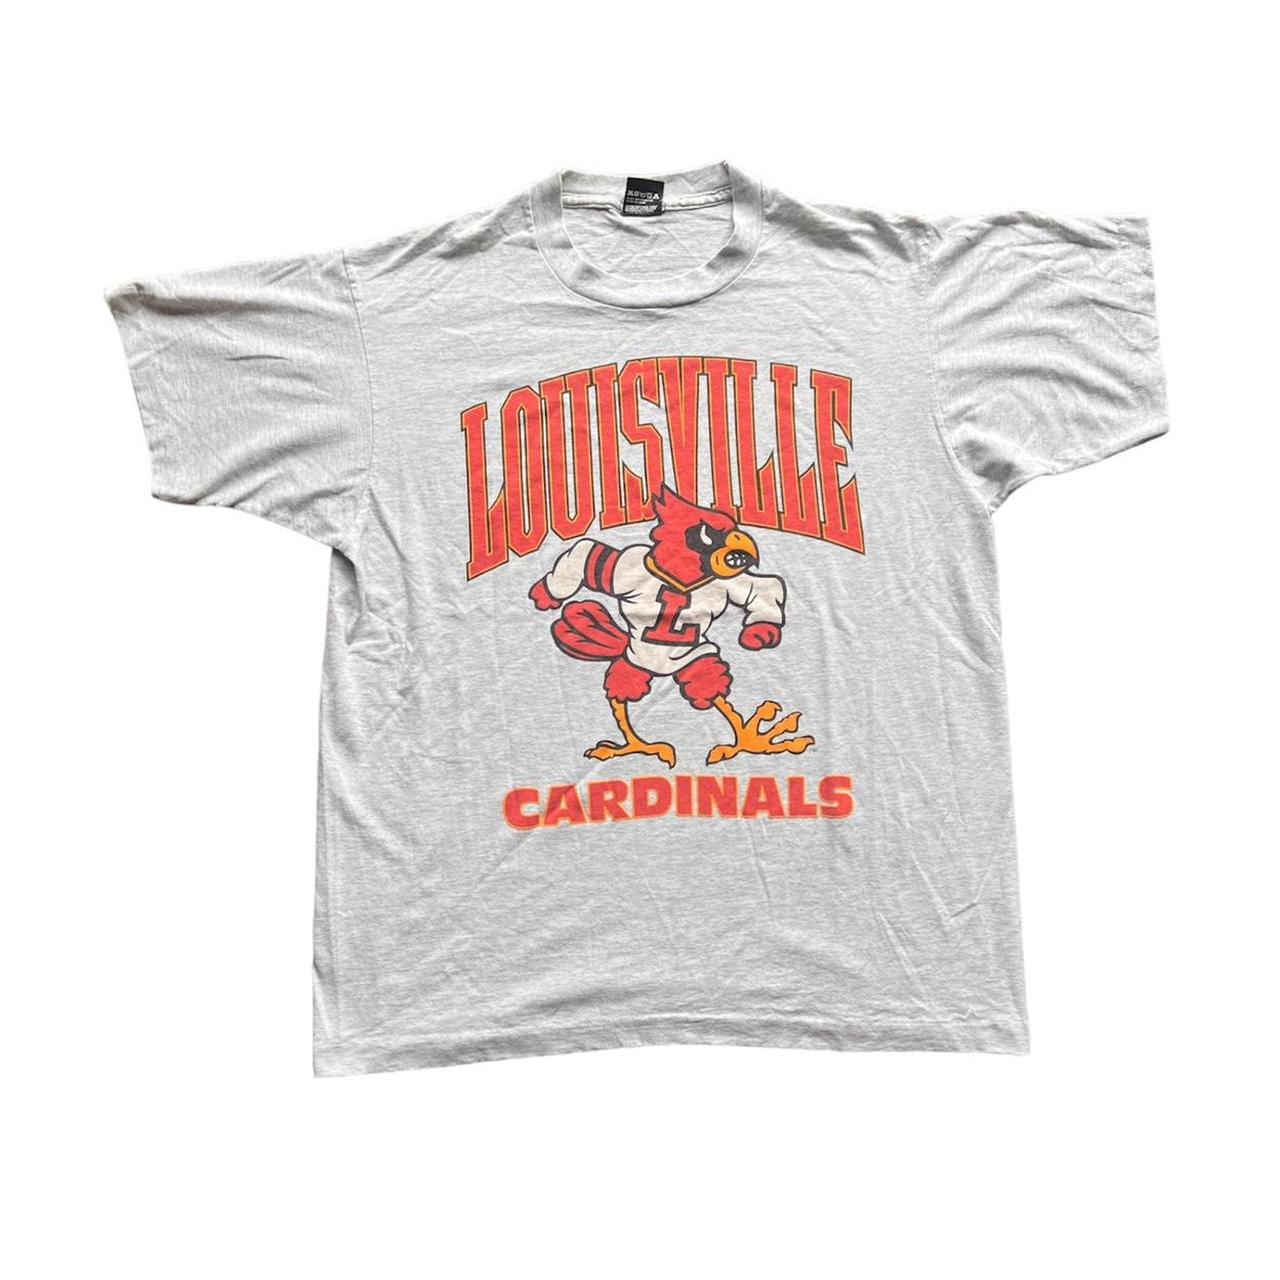 Louisville Toddler T-Shirt